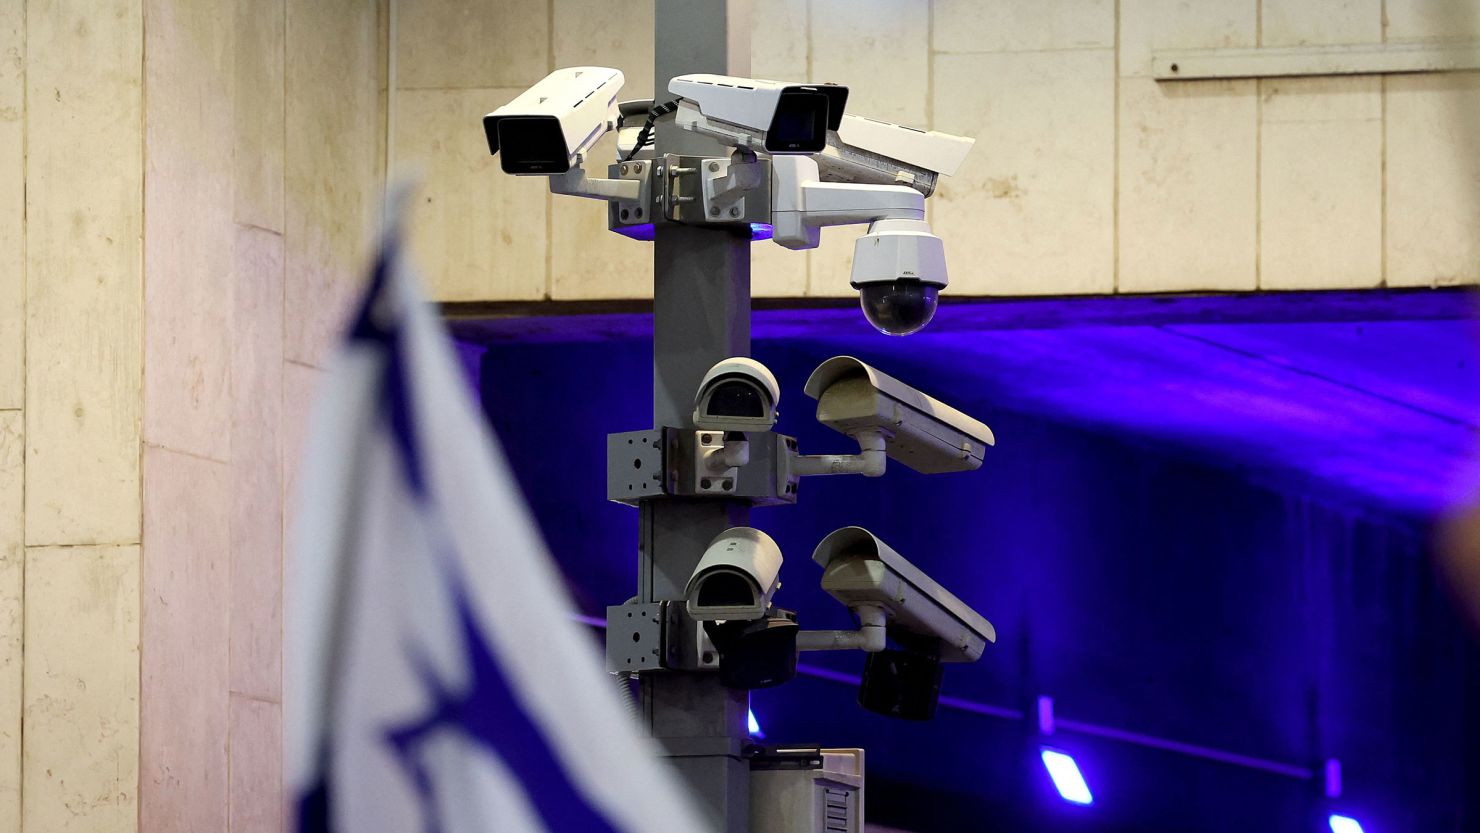 Security surveillance cameras in Tel Aviv on September 23.